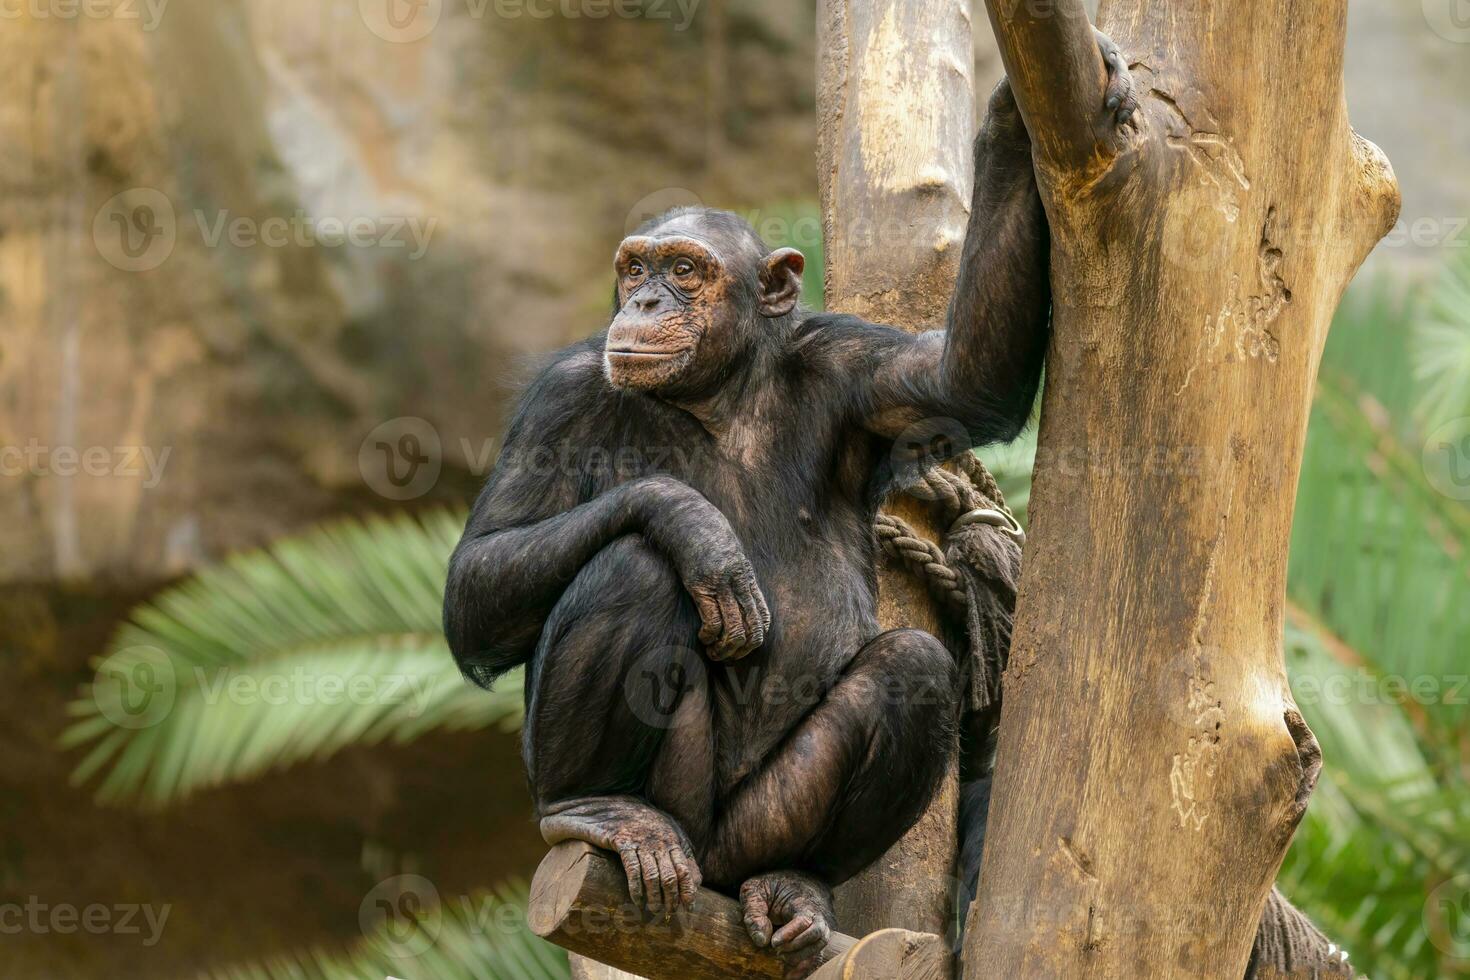 uno adulto chimpancé se sienta relajado en un árbol foto